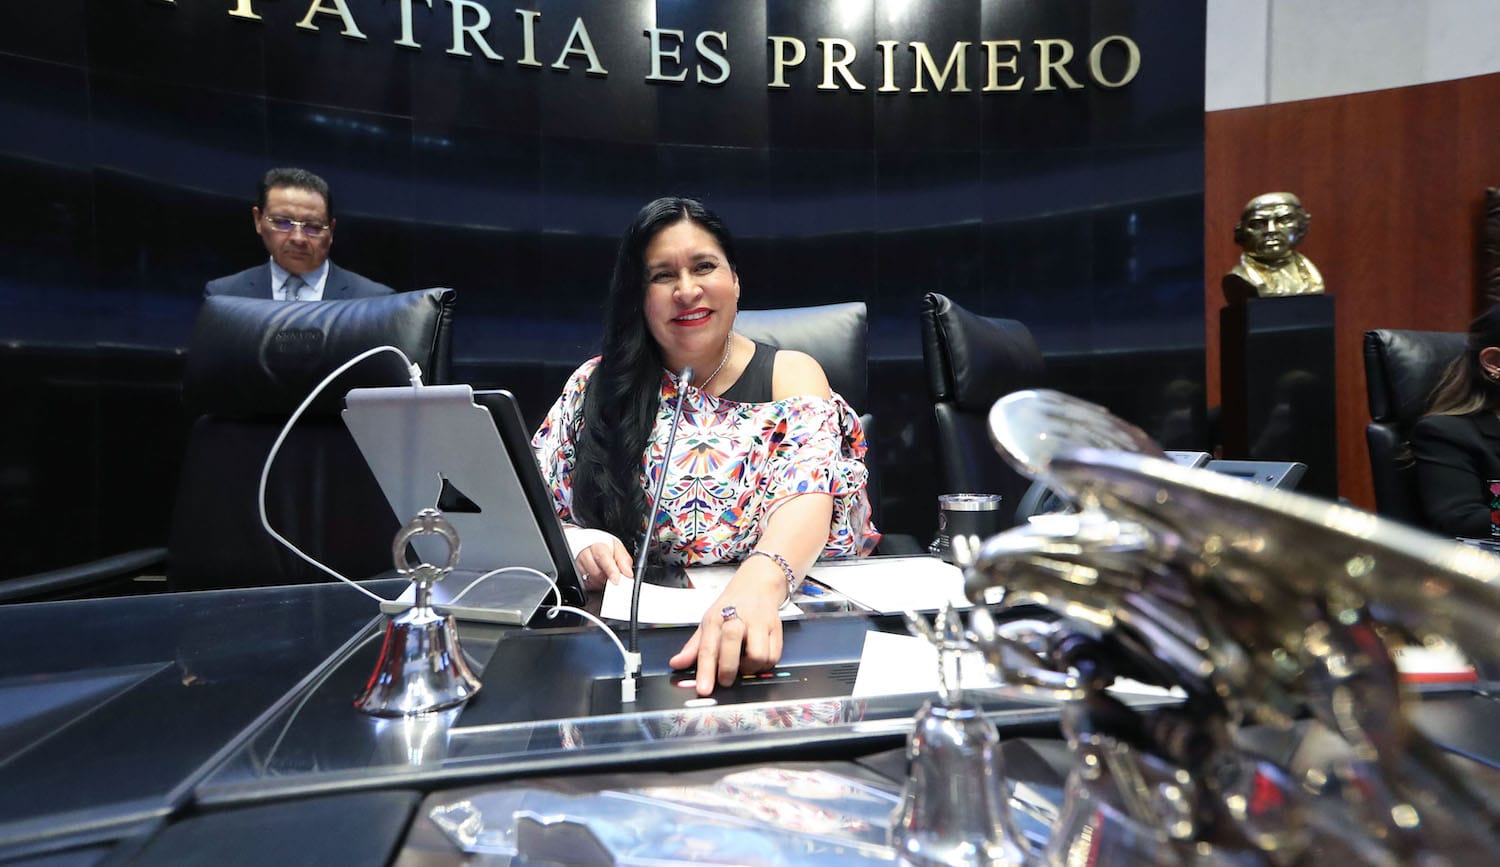 Alianza del Pacífico, acuerdo que representa un equilibrio en laglobalización: Ana Lilia Rivera Rivera